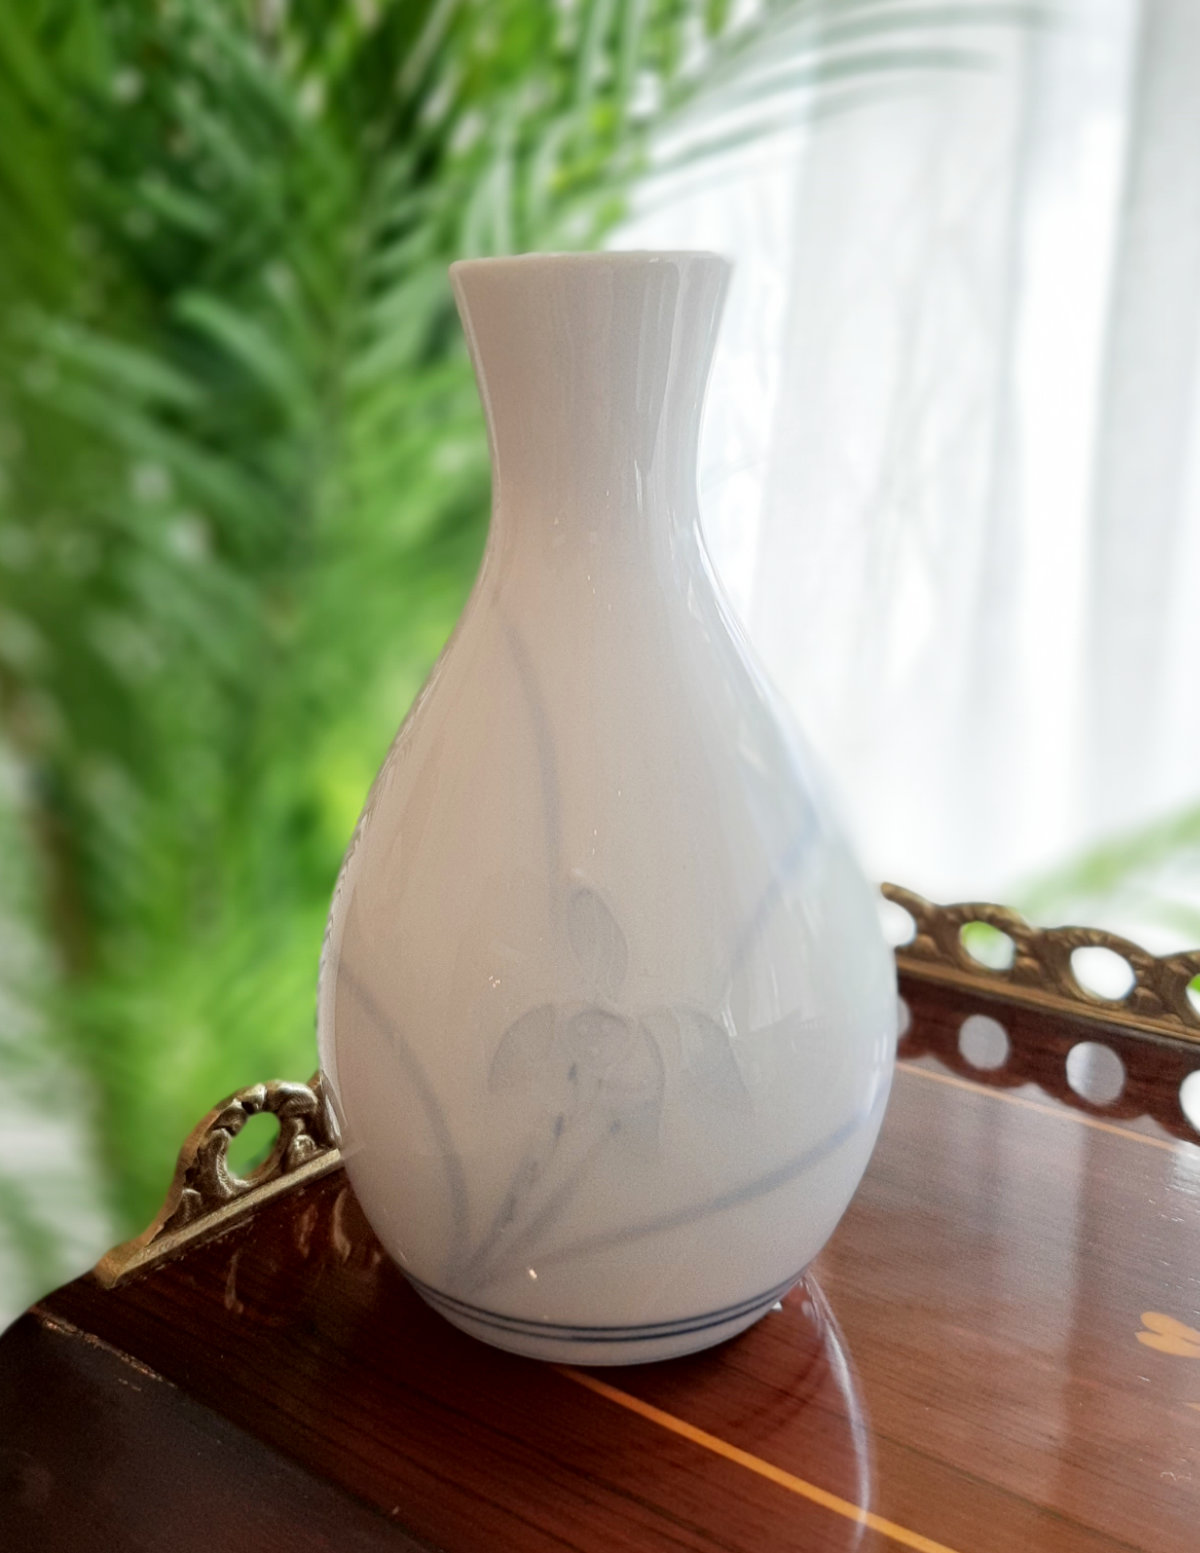 Reisschnaps-Set, weiß, aus Porzellan, wohl aus Japan, blaues Dekor, Flasche.